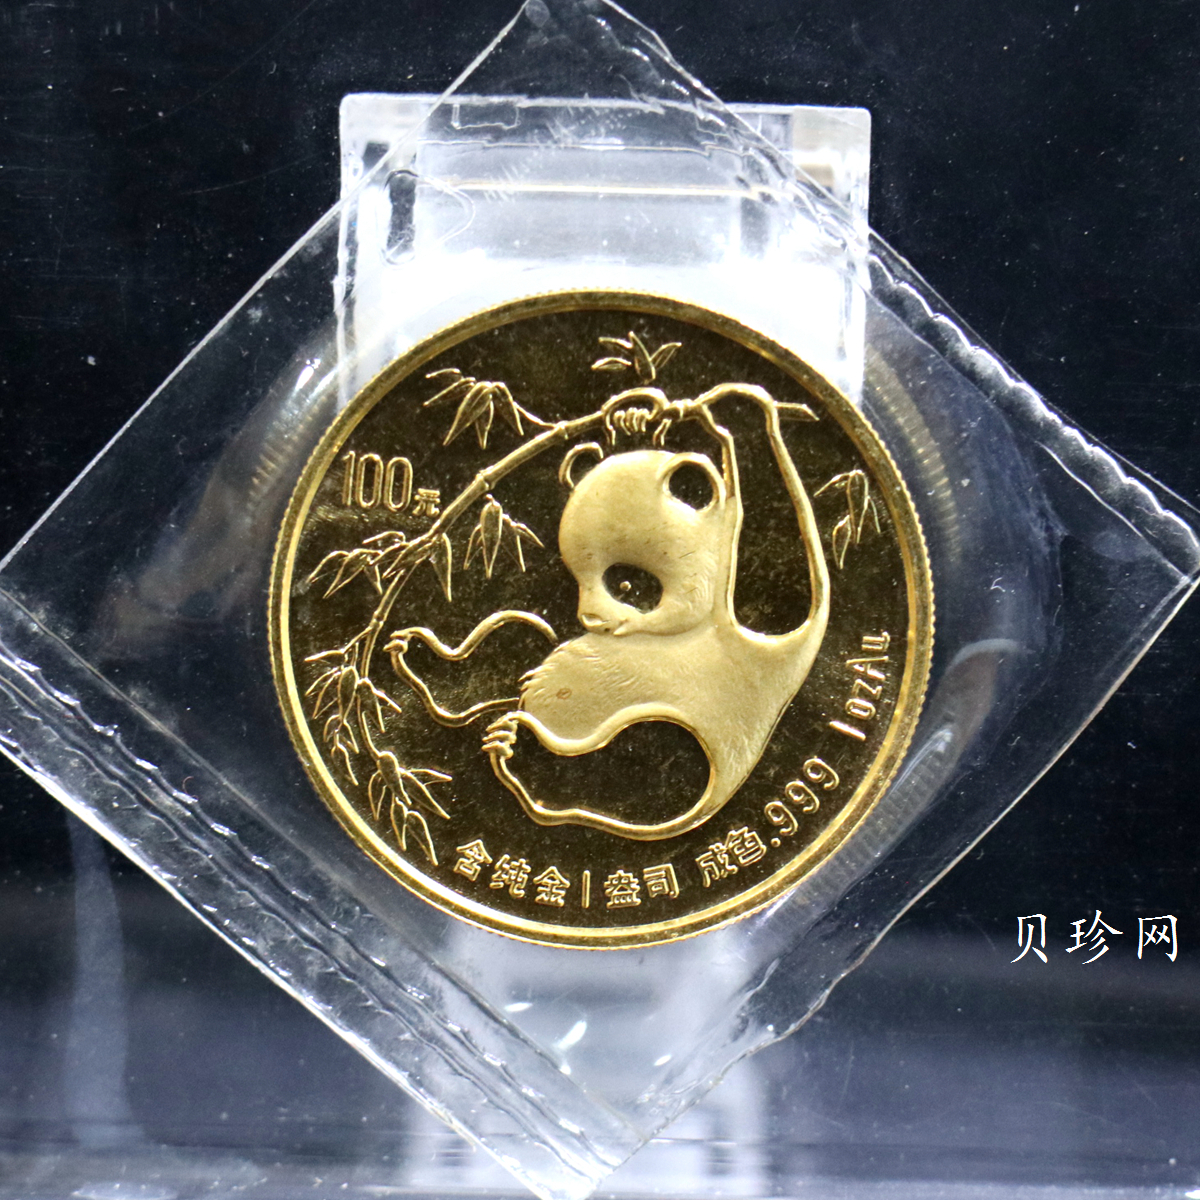 【850101】1985年熊猫1盎司精制金币